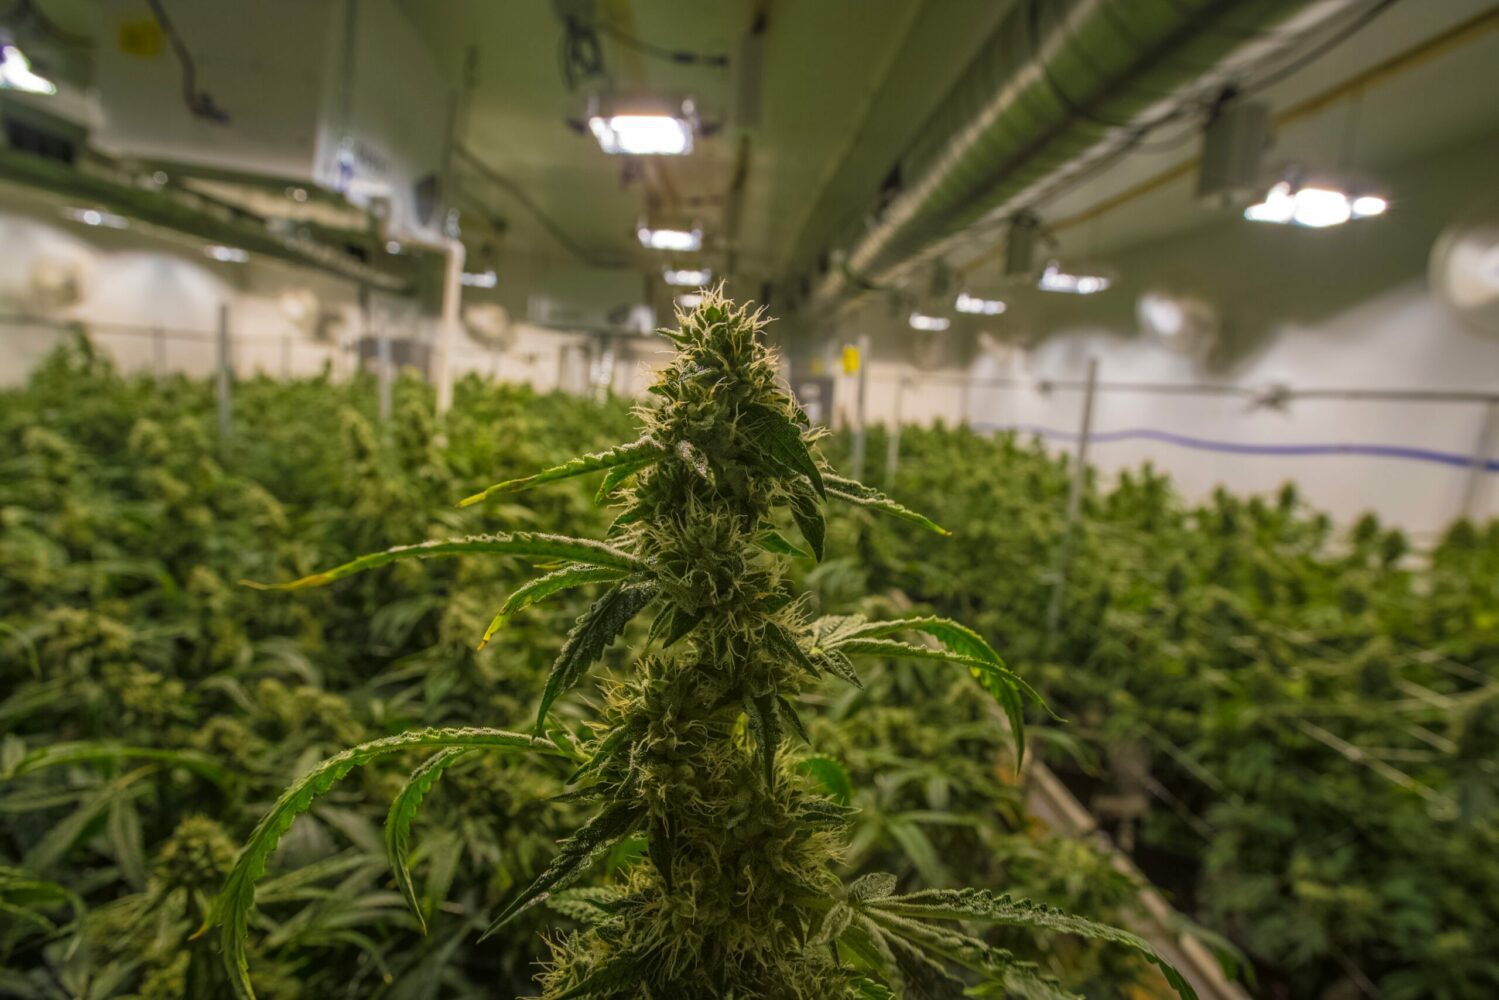 Marijuana growing in a cannabis grow room